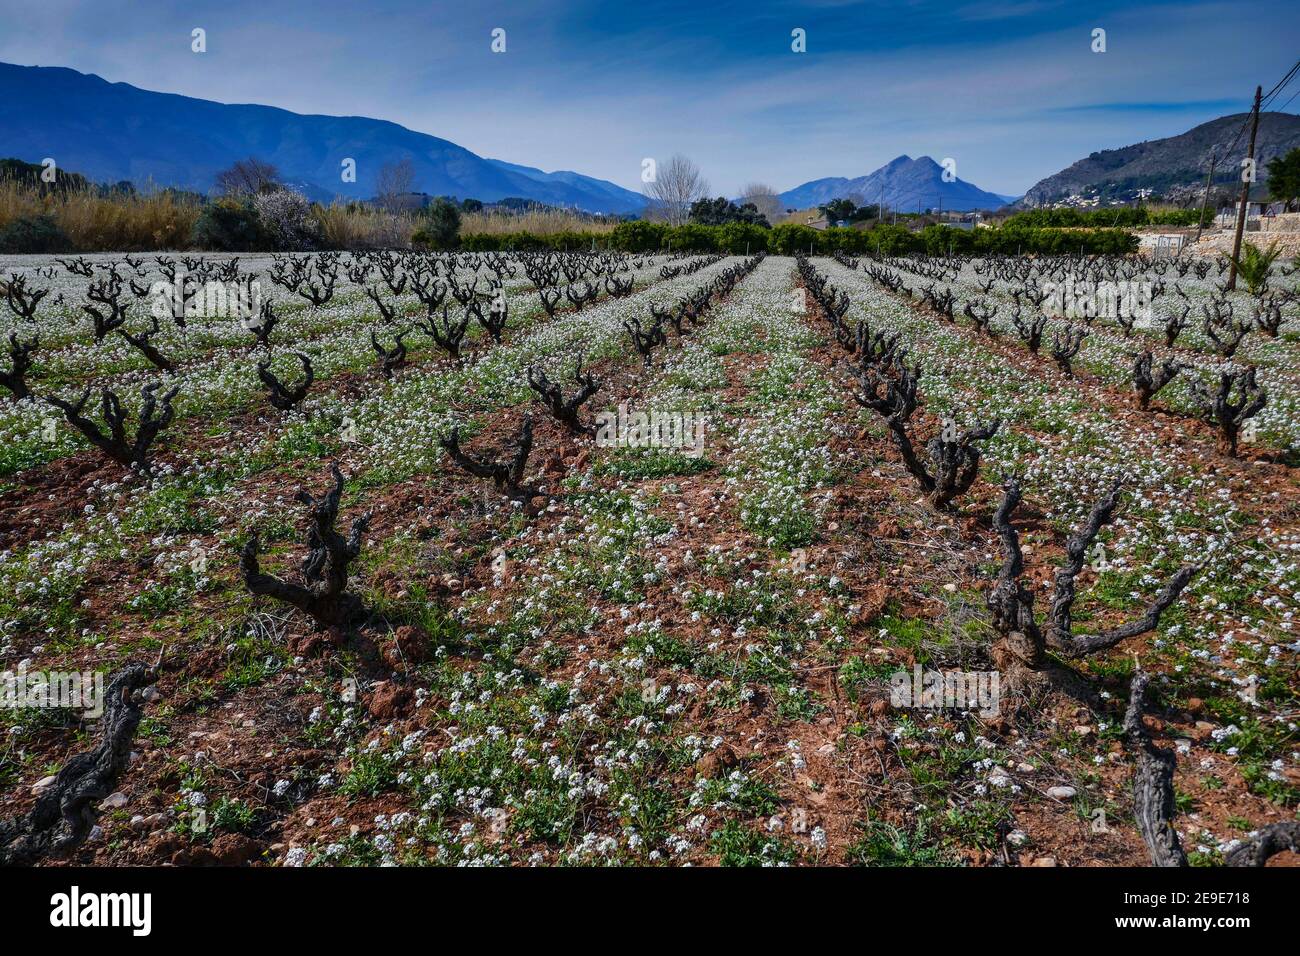 Linien von Reben mit weißen Blüten, Frühling in der Jalon, Xalo Valley, Costa Blanca, Spanien Stockfoto